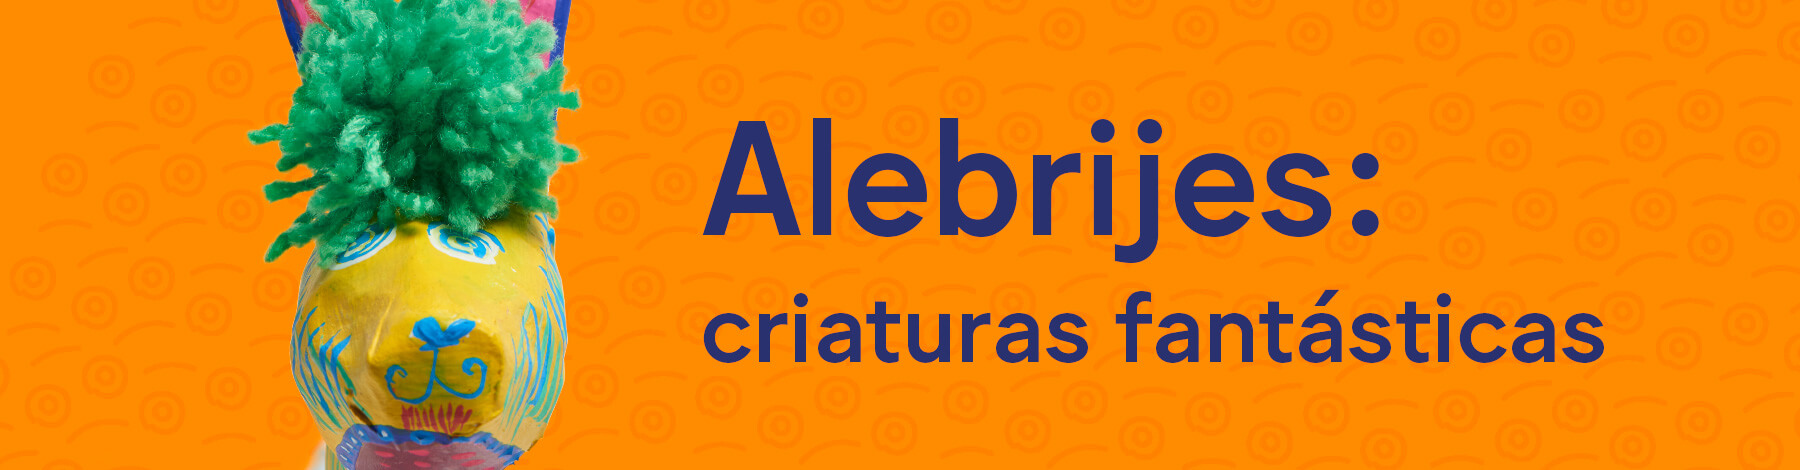 Alebrijes: criaturas fantásticas | Museo Amparo, Puebla | Museo Amparo, Puebla.